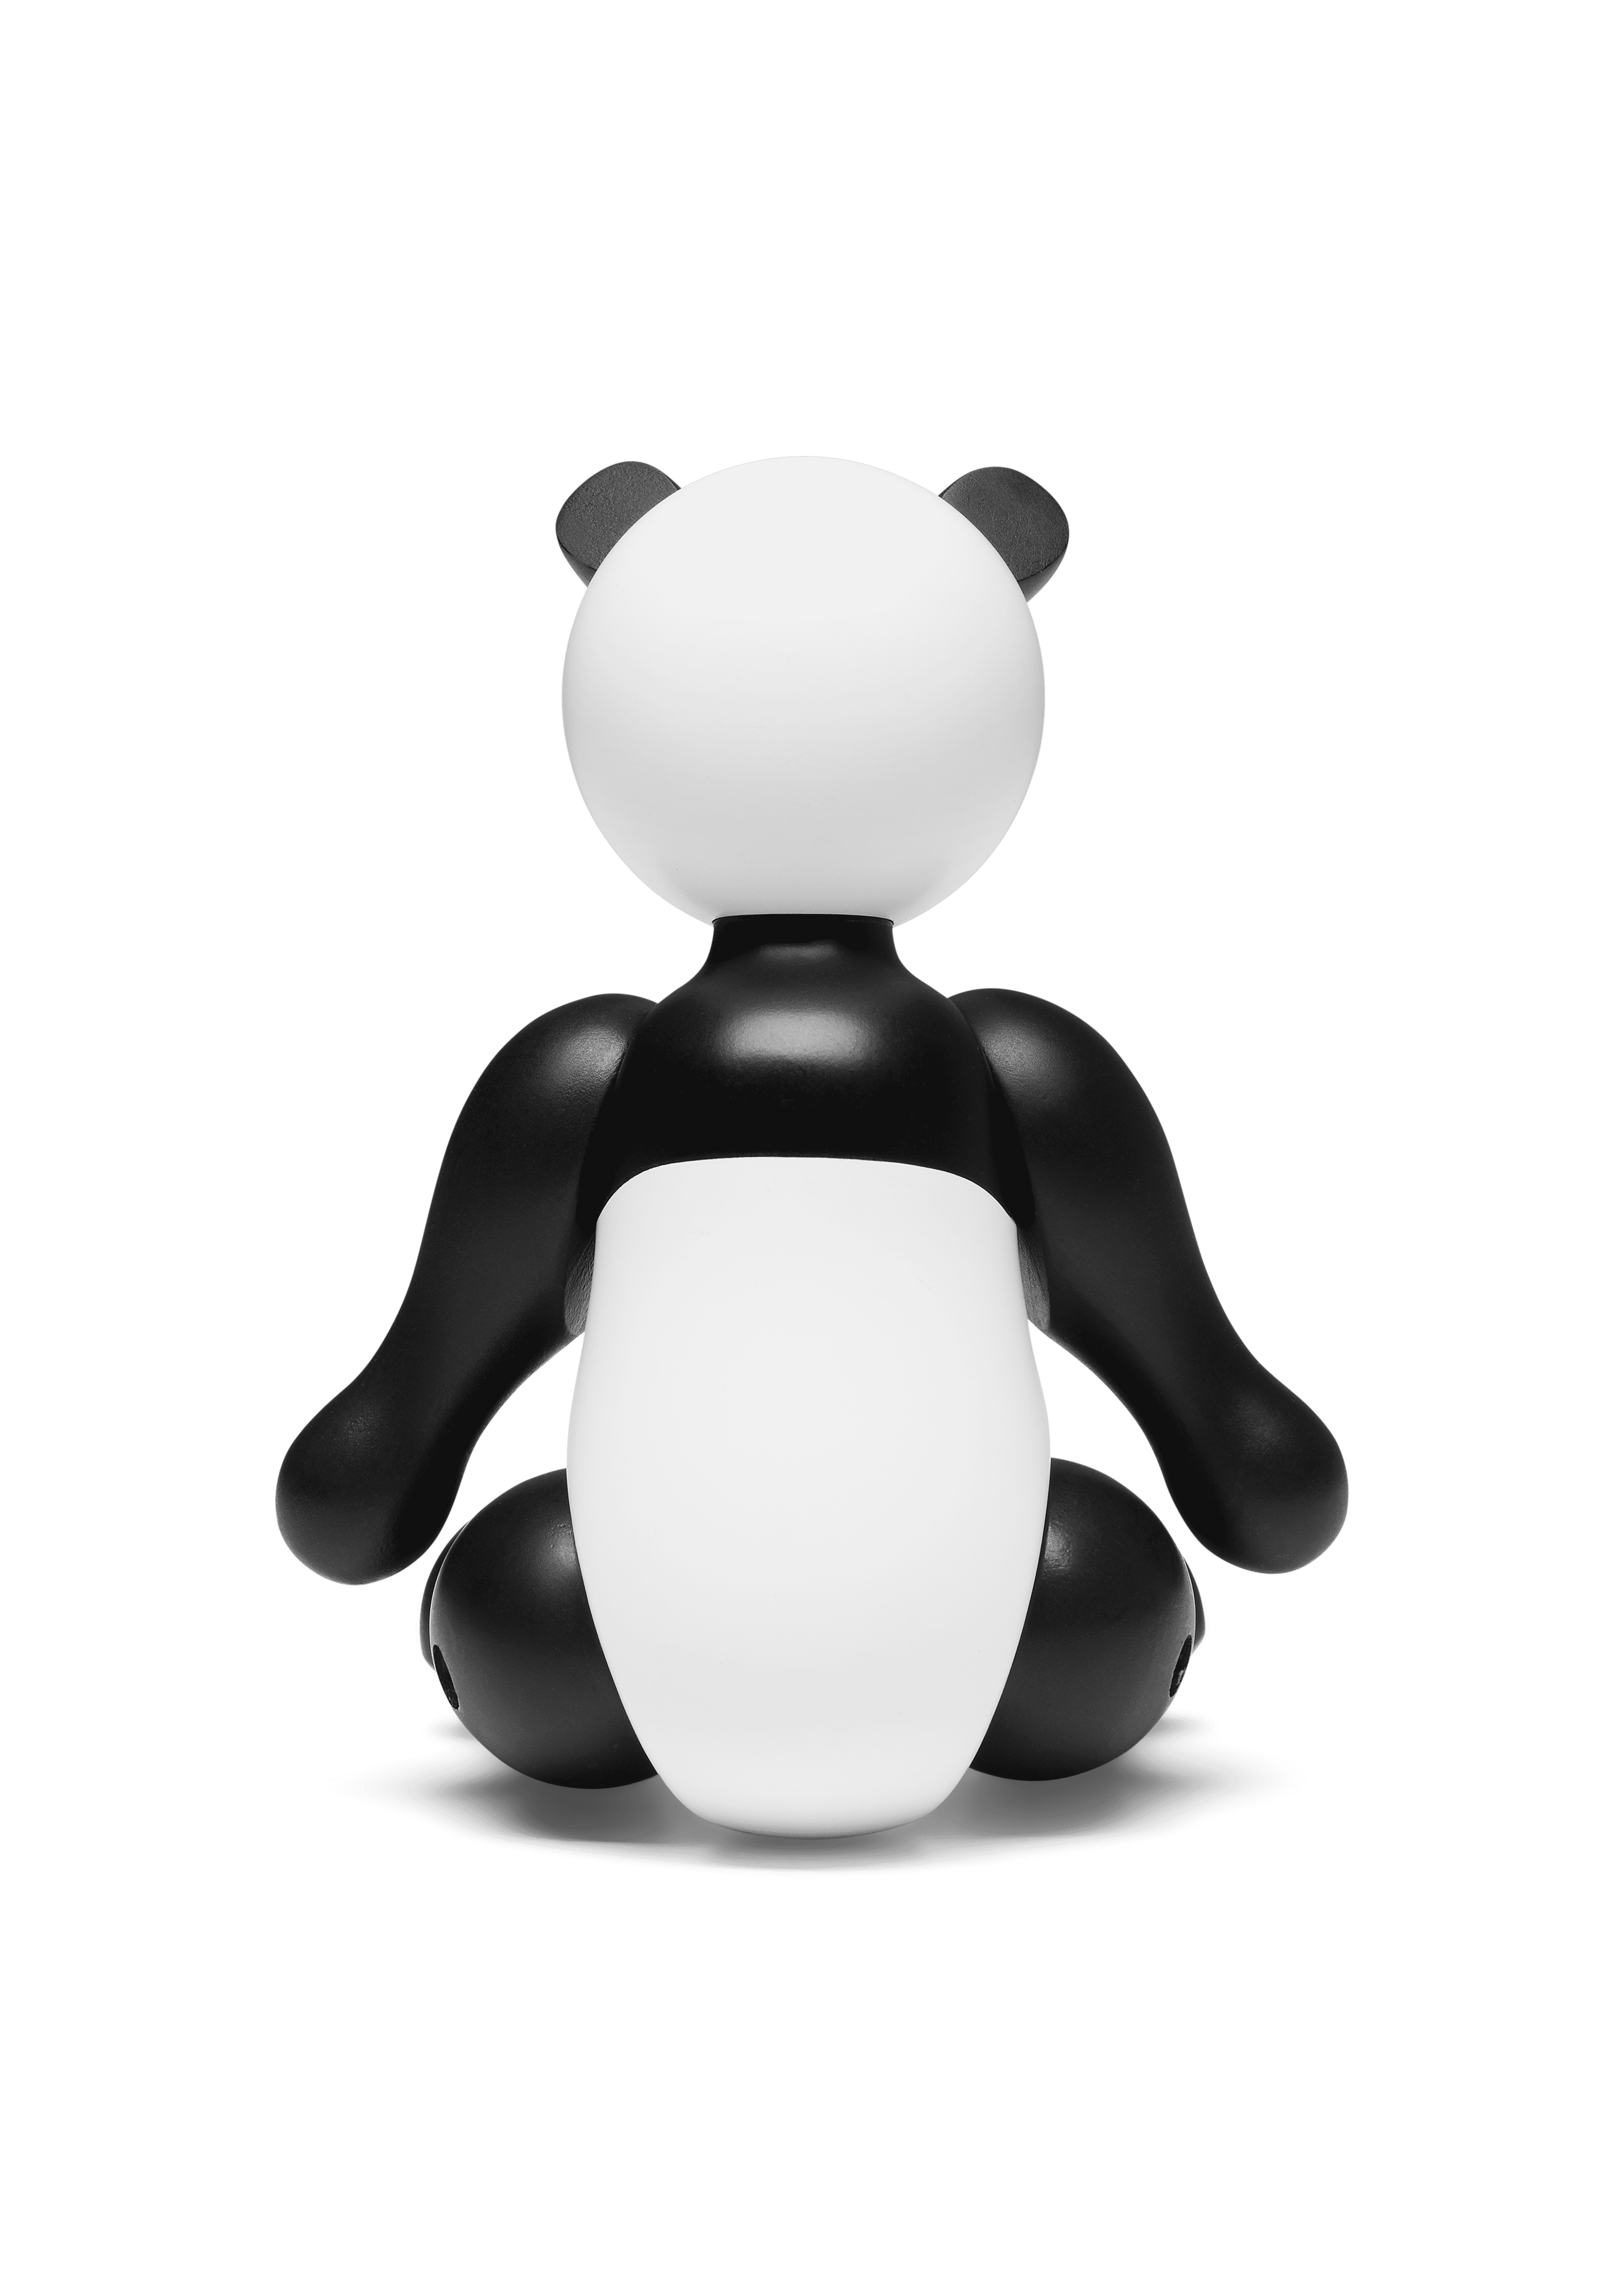 Pandabear WWF 2019 small